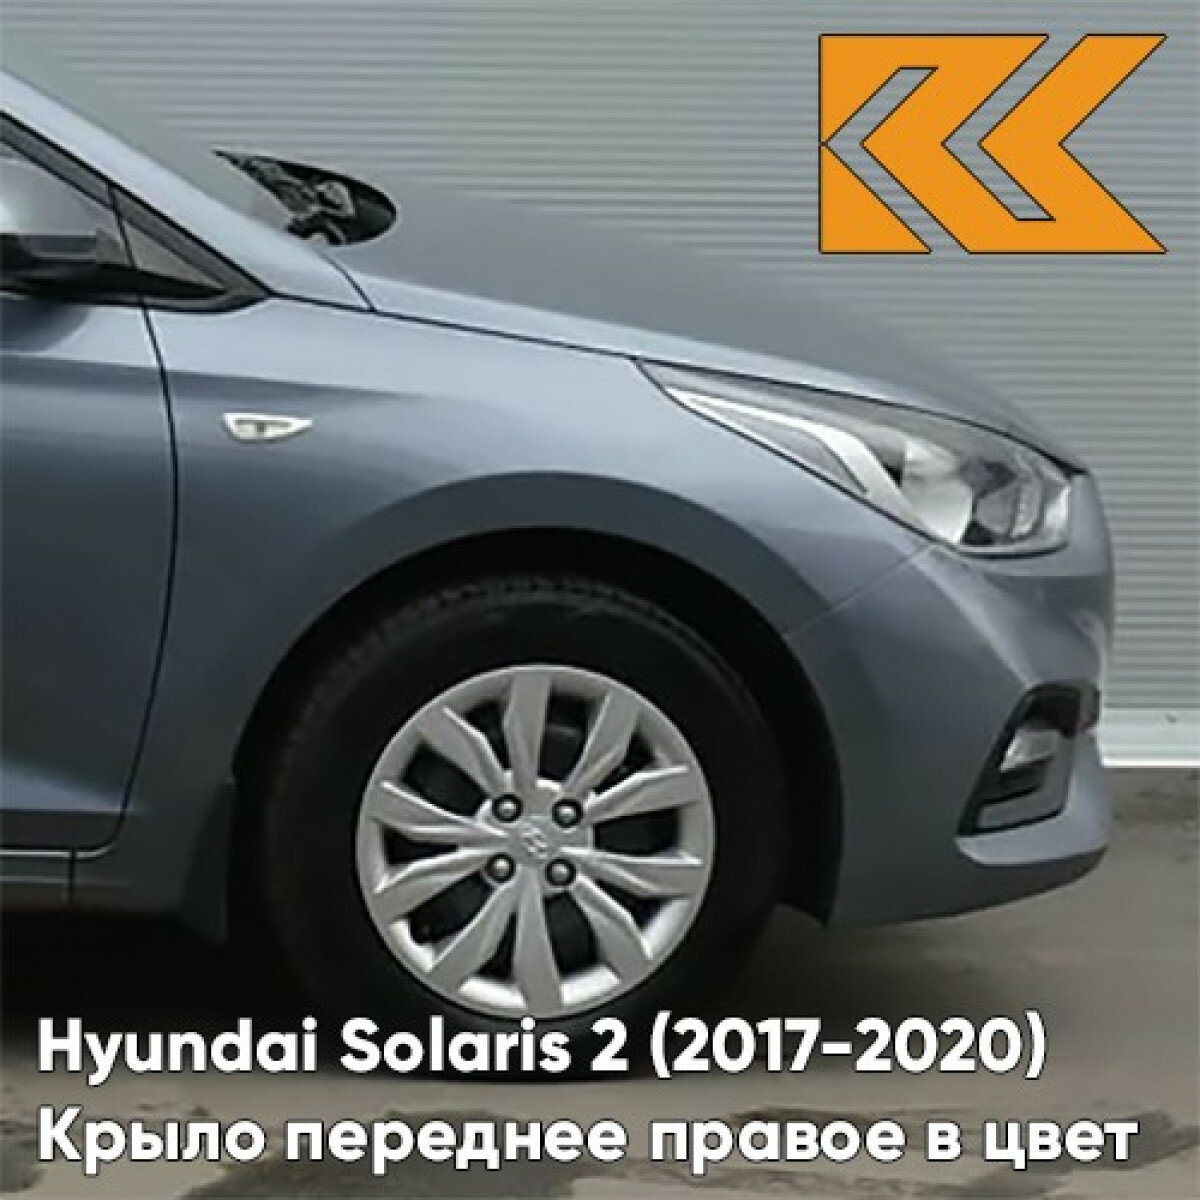 Крыло переднее правое в цвет Hyundai Solaris 2 Хендай Солярис U4G - URBAN GRAY - Серый